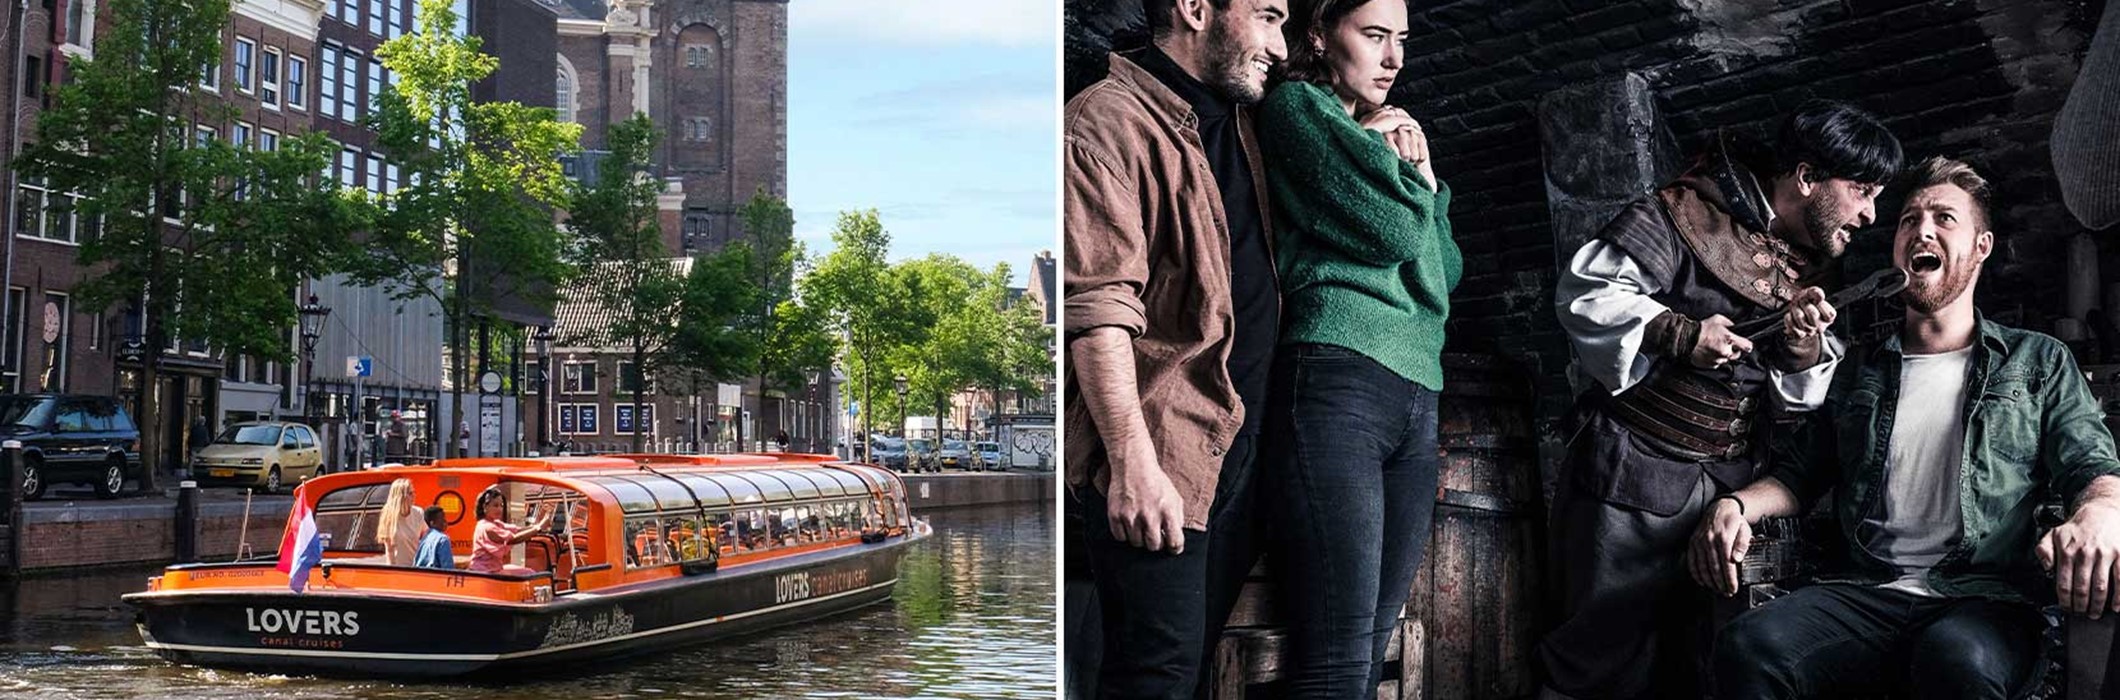 The Amsterdam Dungeon + Grachtenrundfahrt Amsterdam